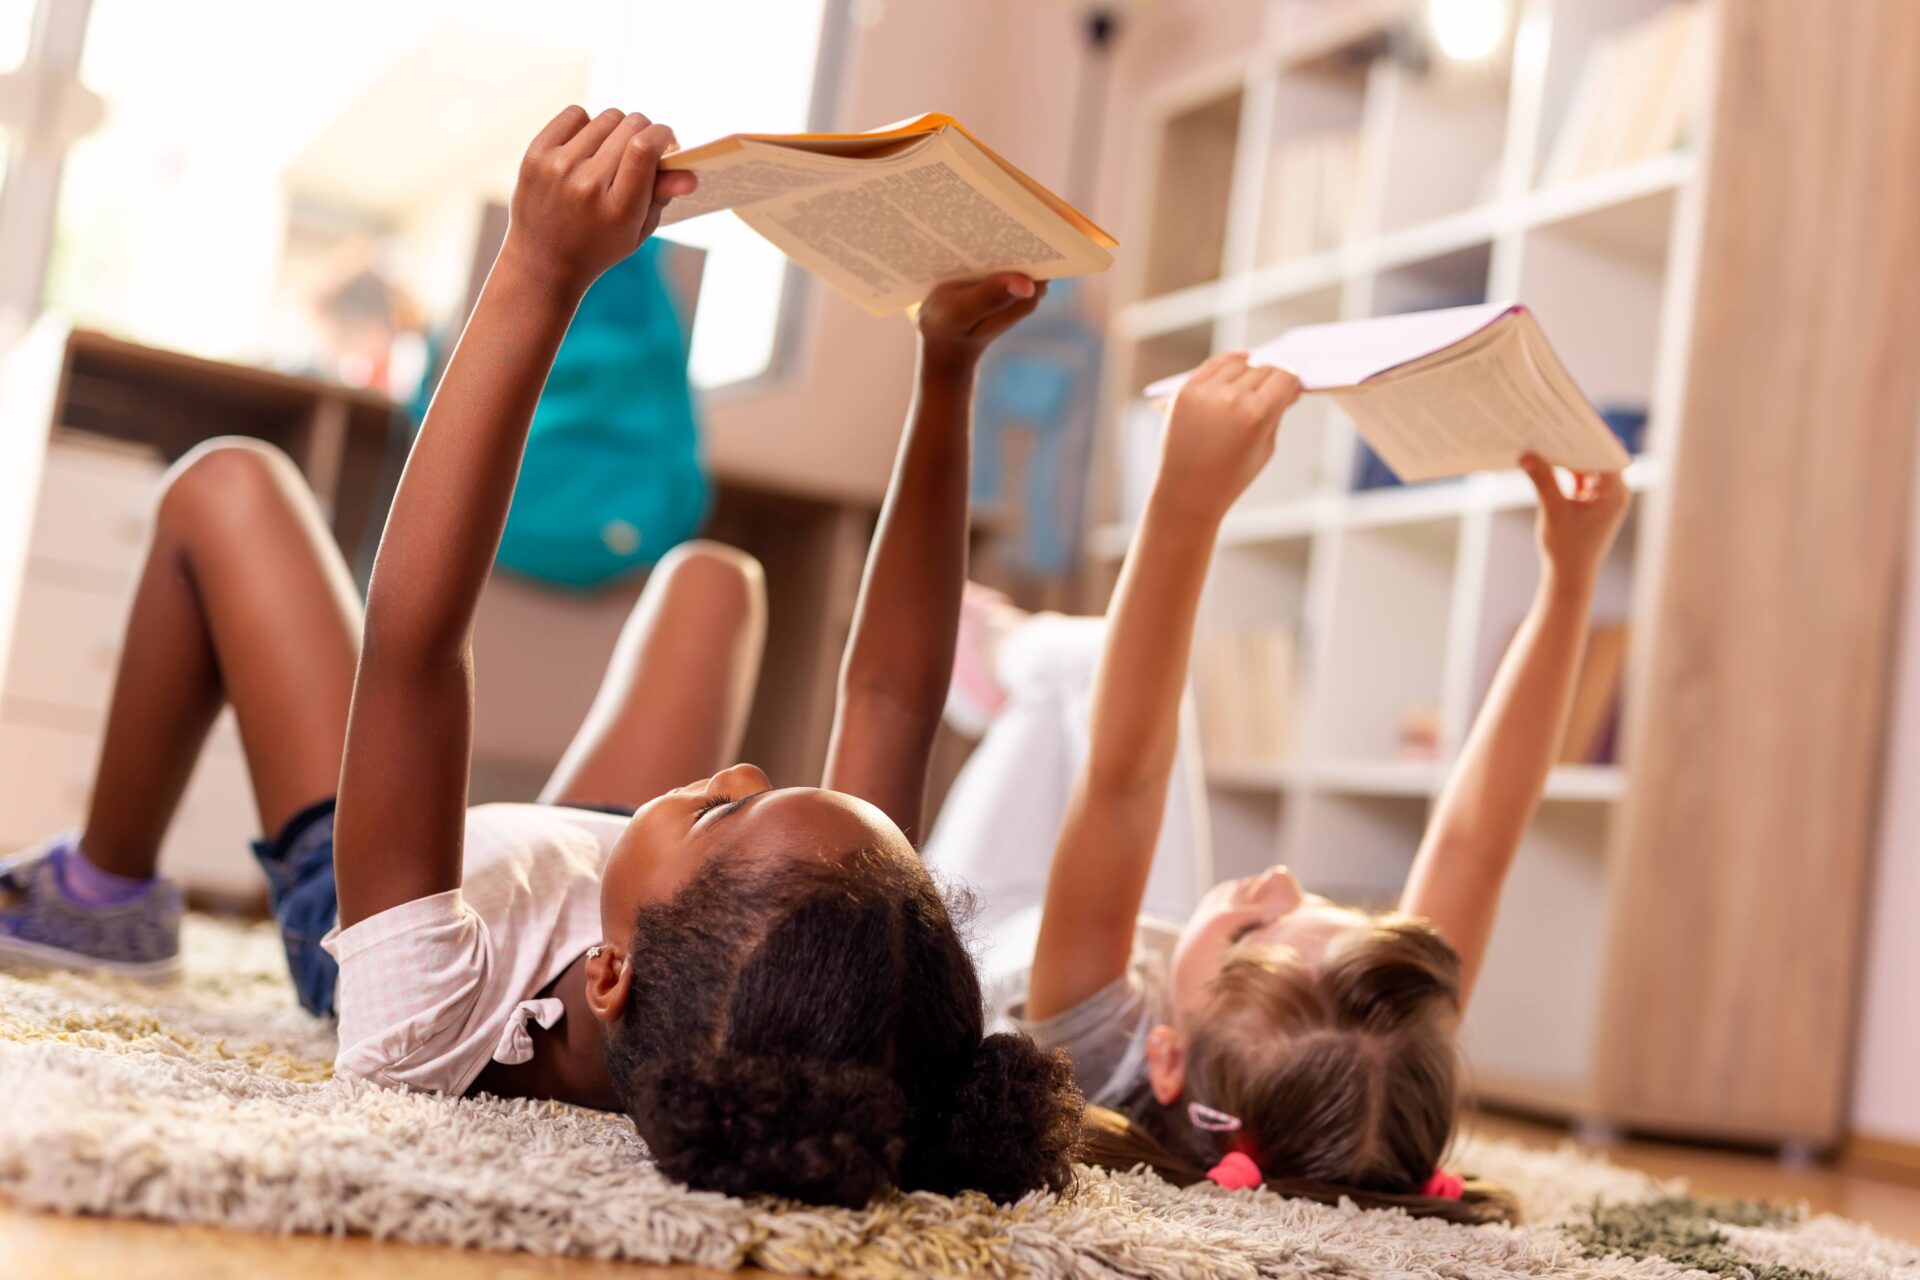 Children reading books on the floor